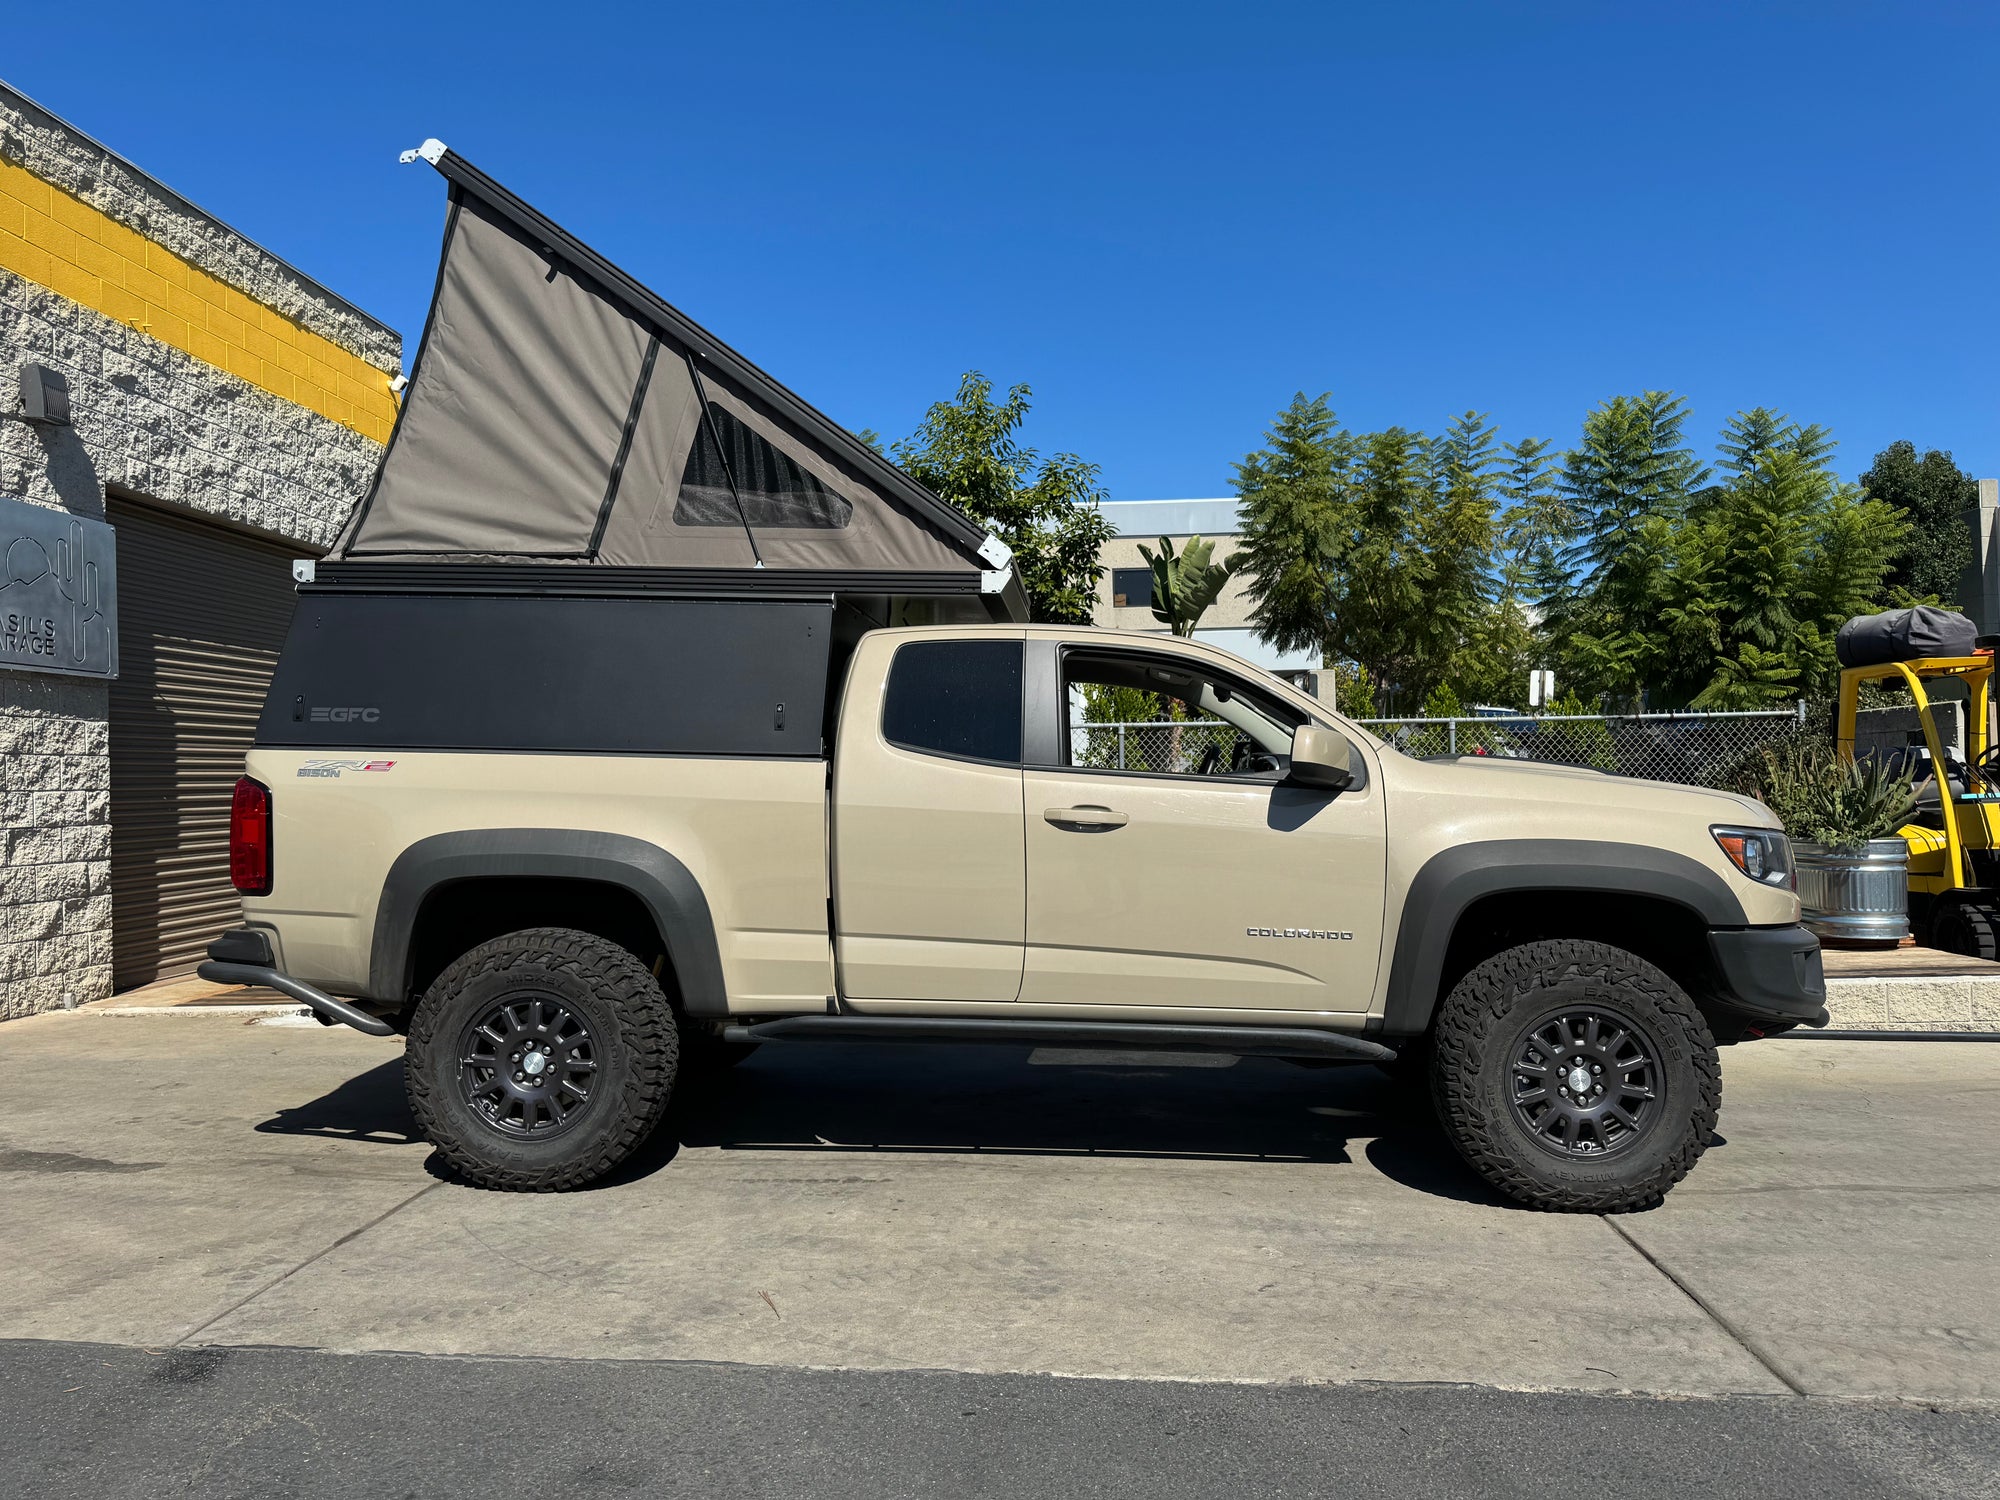 2021 Chevrolet Colorado Camper - Build #5638